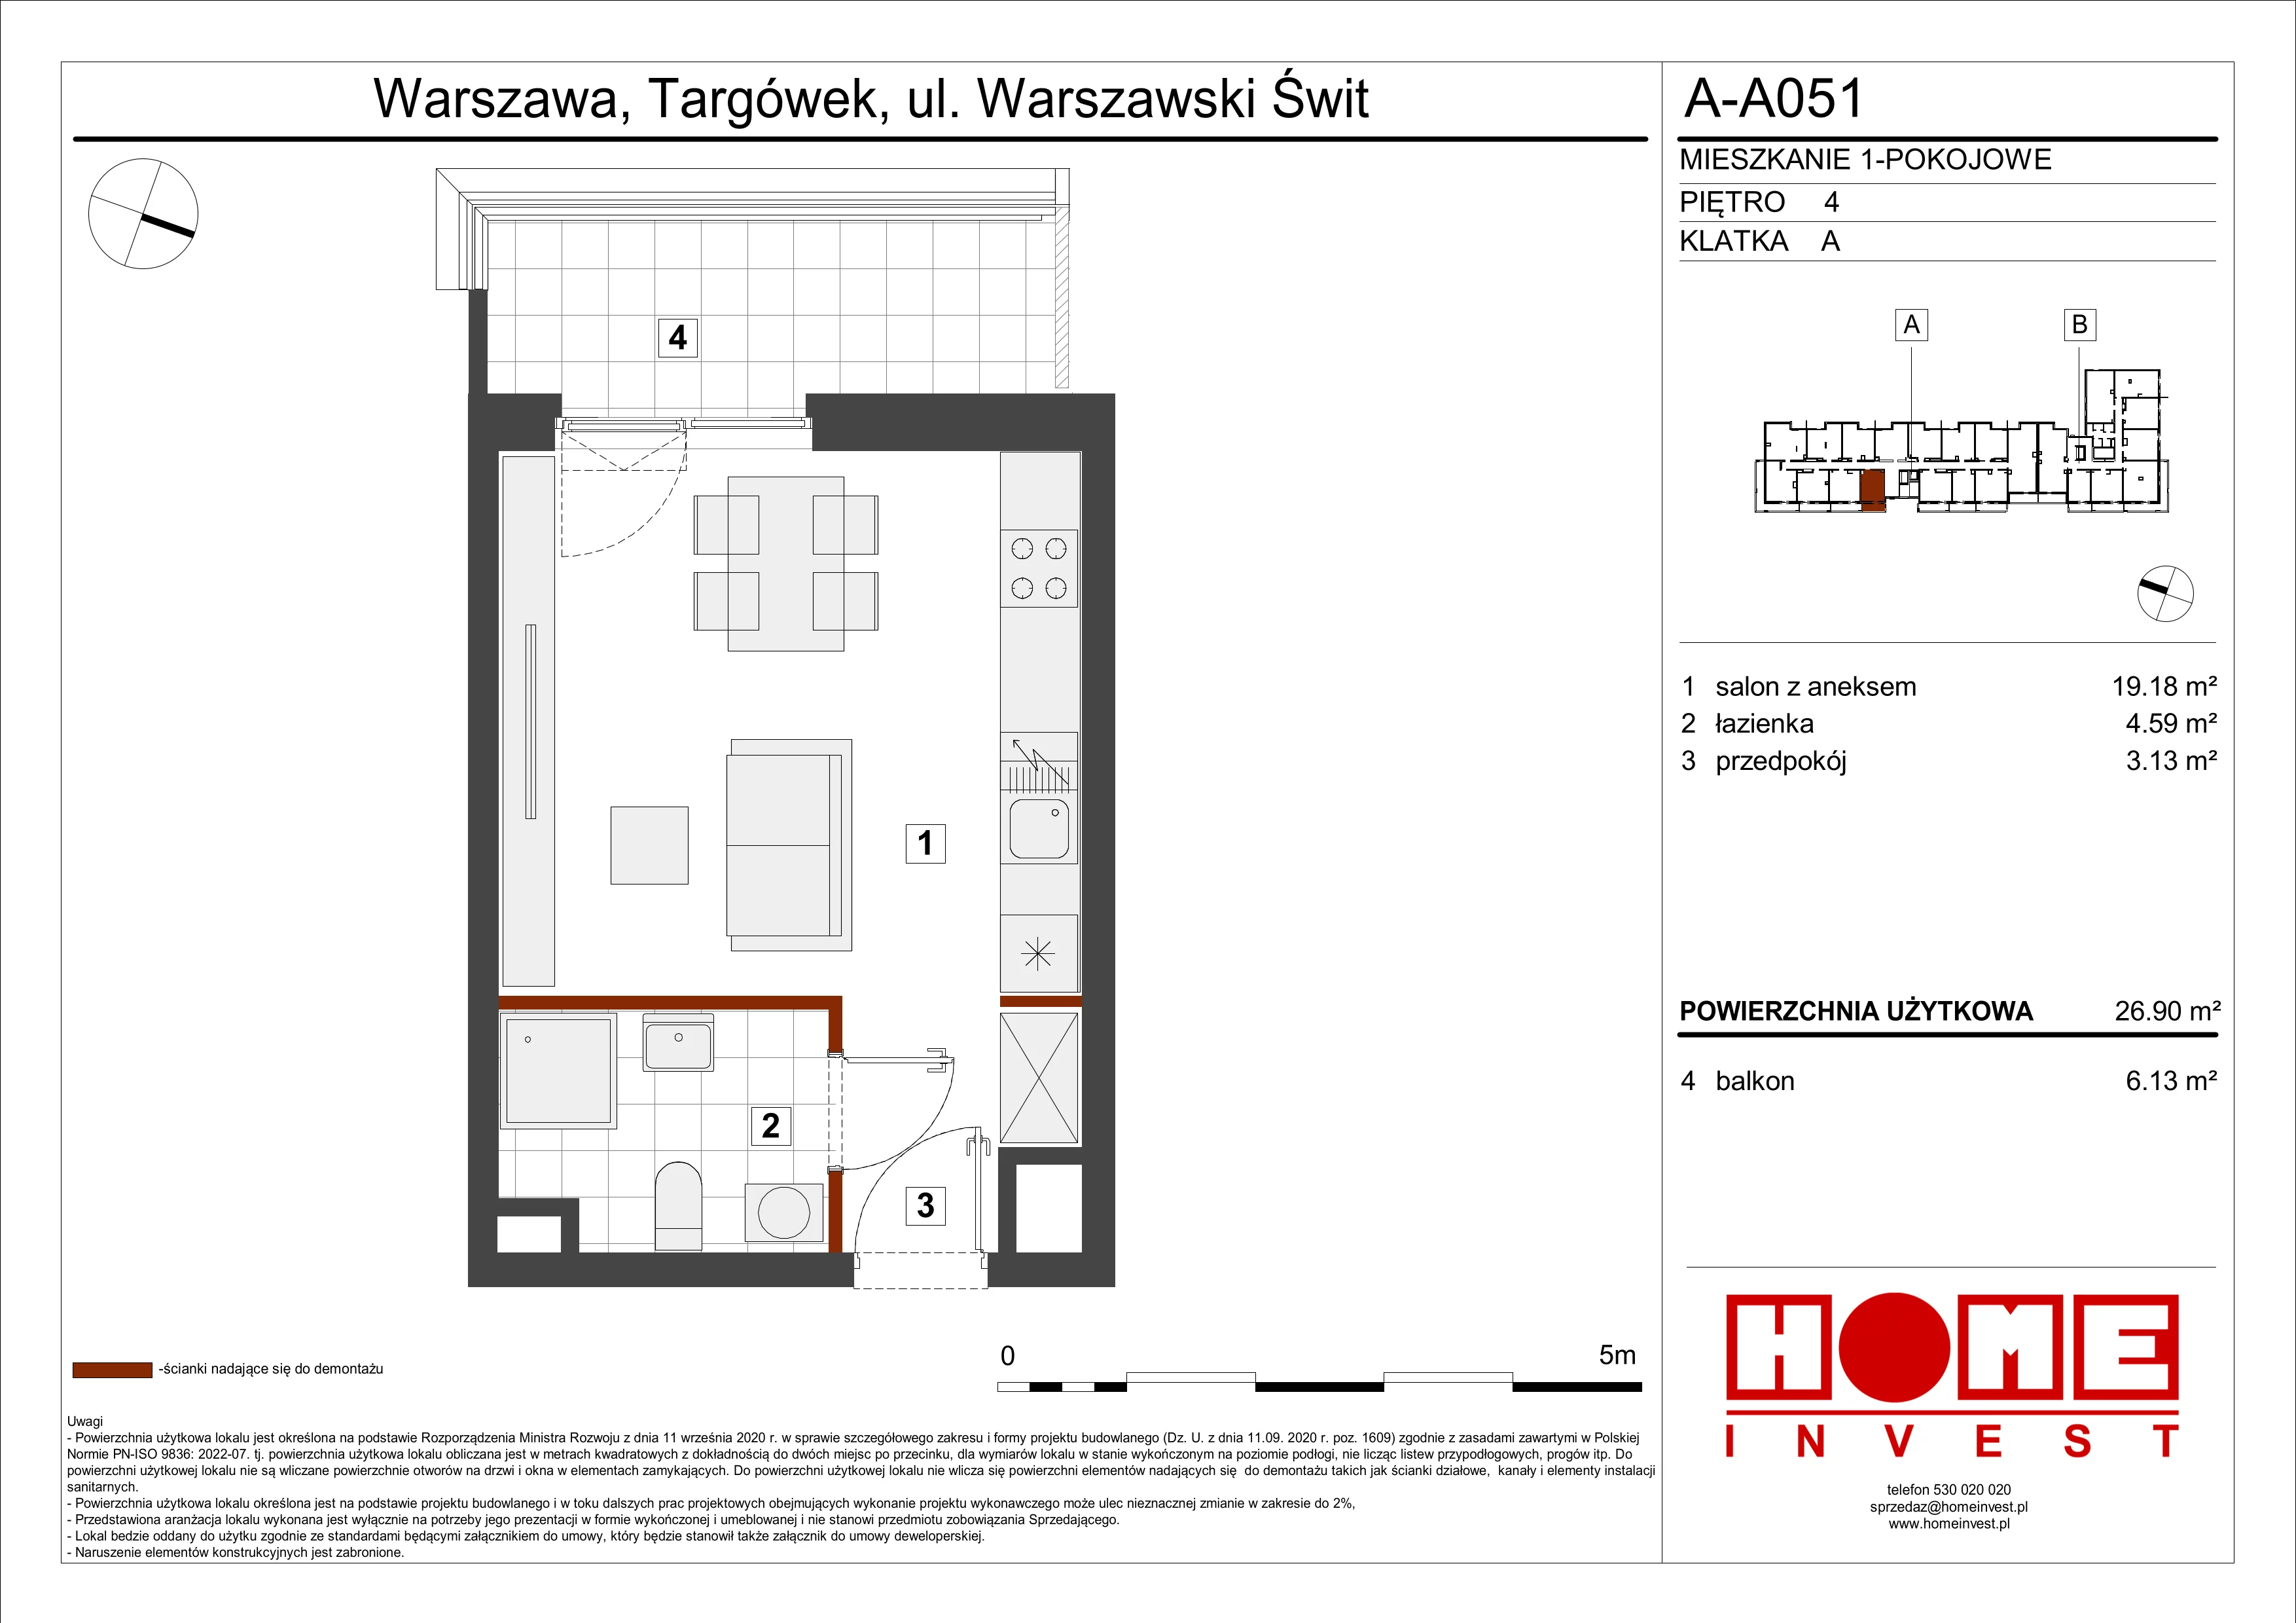 Mieszkanie 26,90 m², piętro 4, oferta nr A-A051, Warszawski Świt, Warszawa, Targówek, Bródno, ul. Warszawski Świt 5